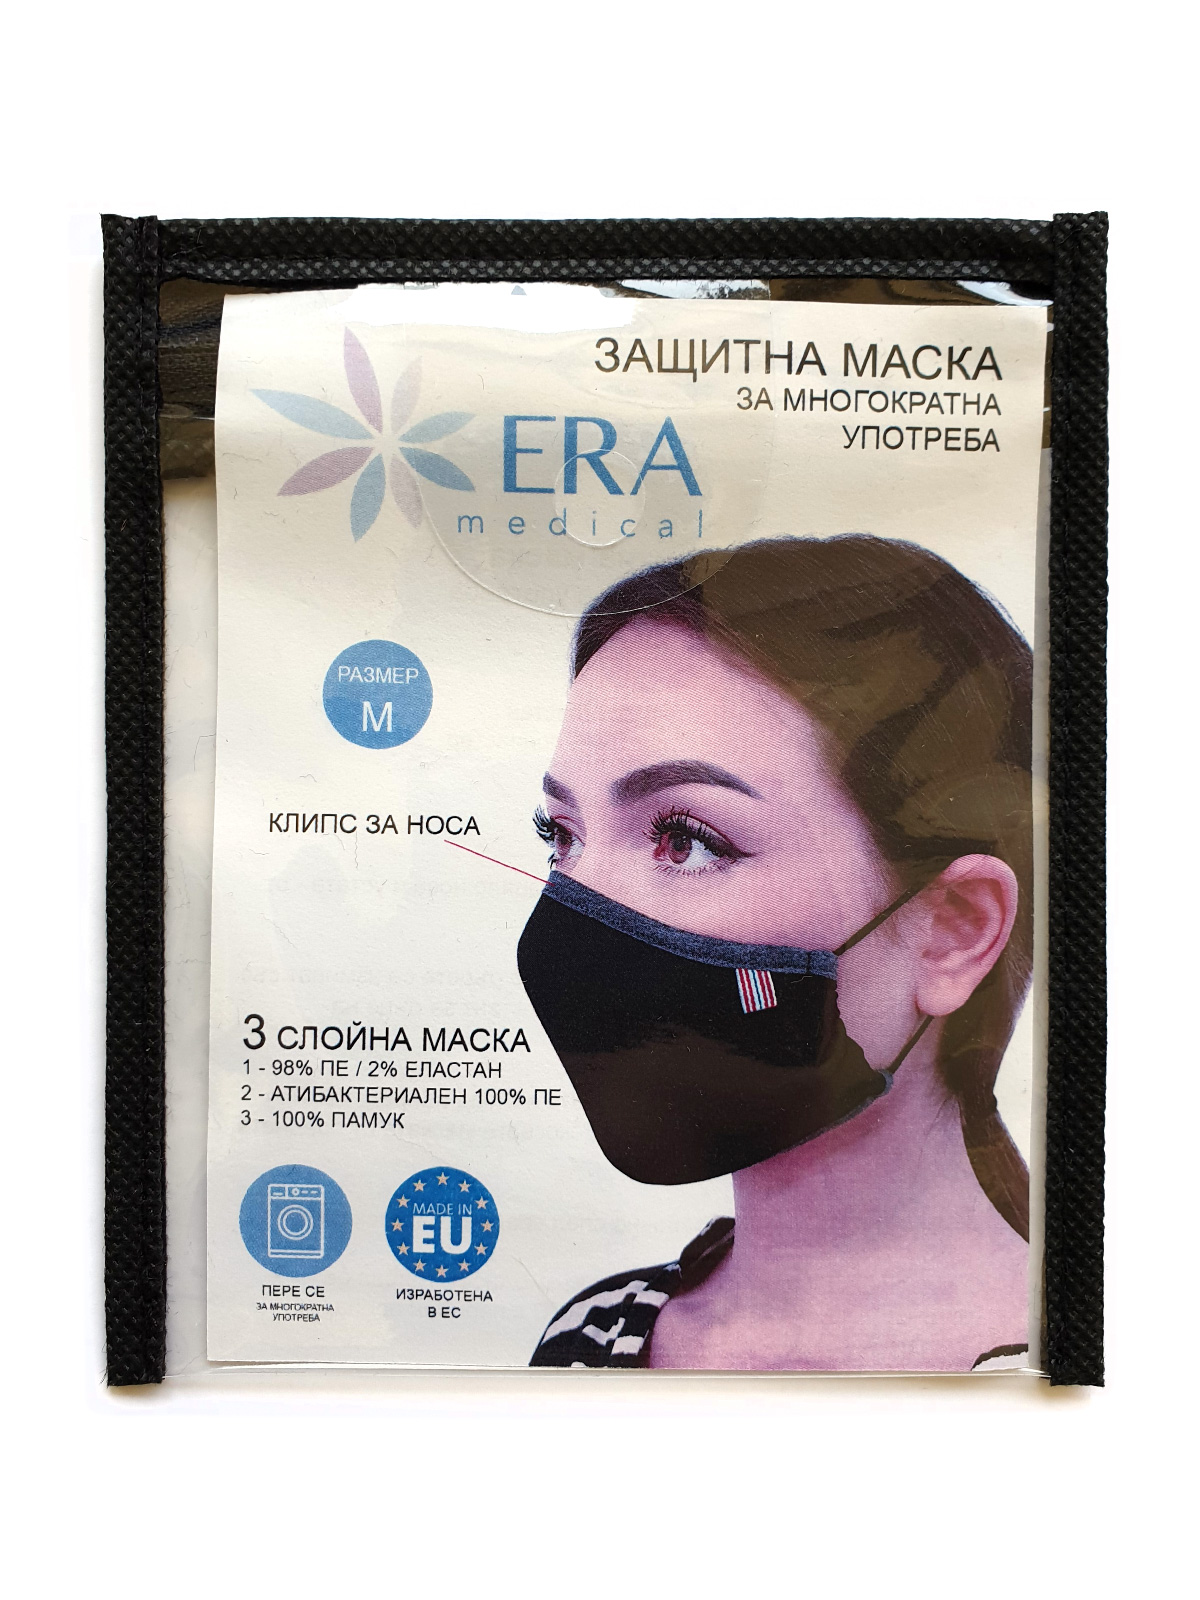  reusable mask black  - 10682 - € 2.76 img4